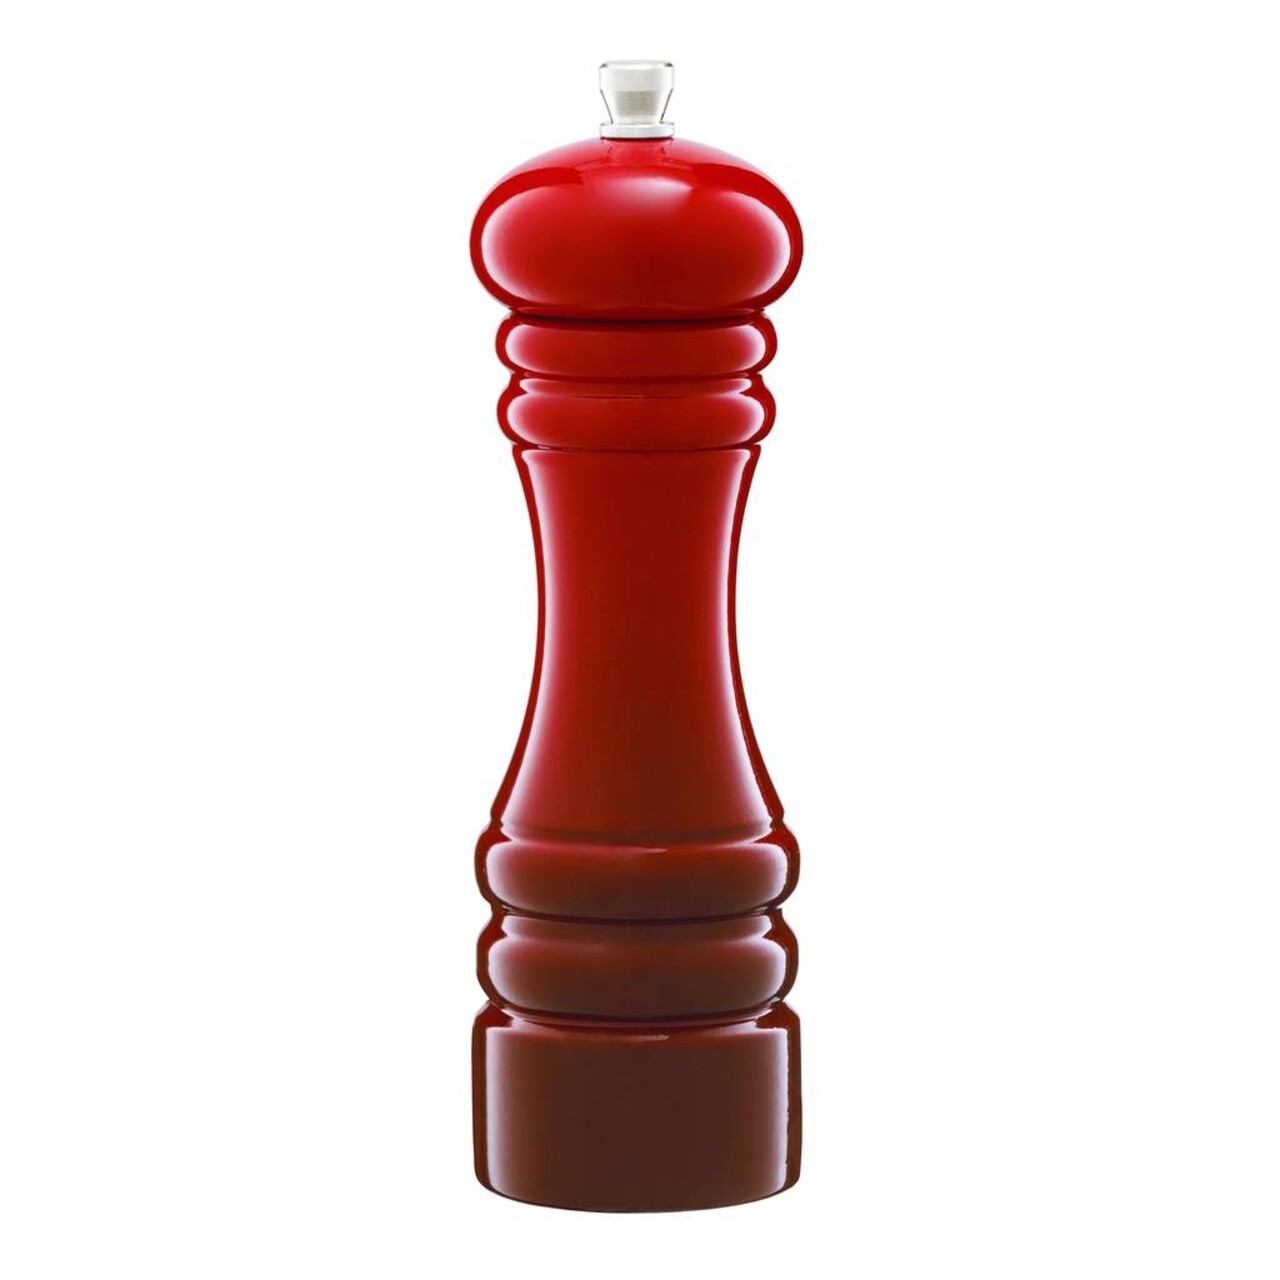 Rasnita piper / sare Chess, Ambition, 18 cm, lemn, rosu